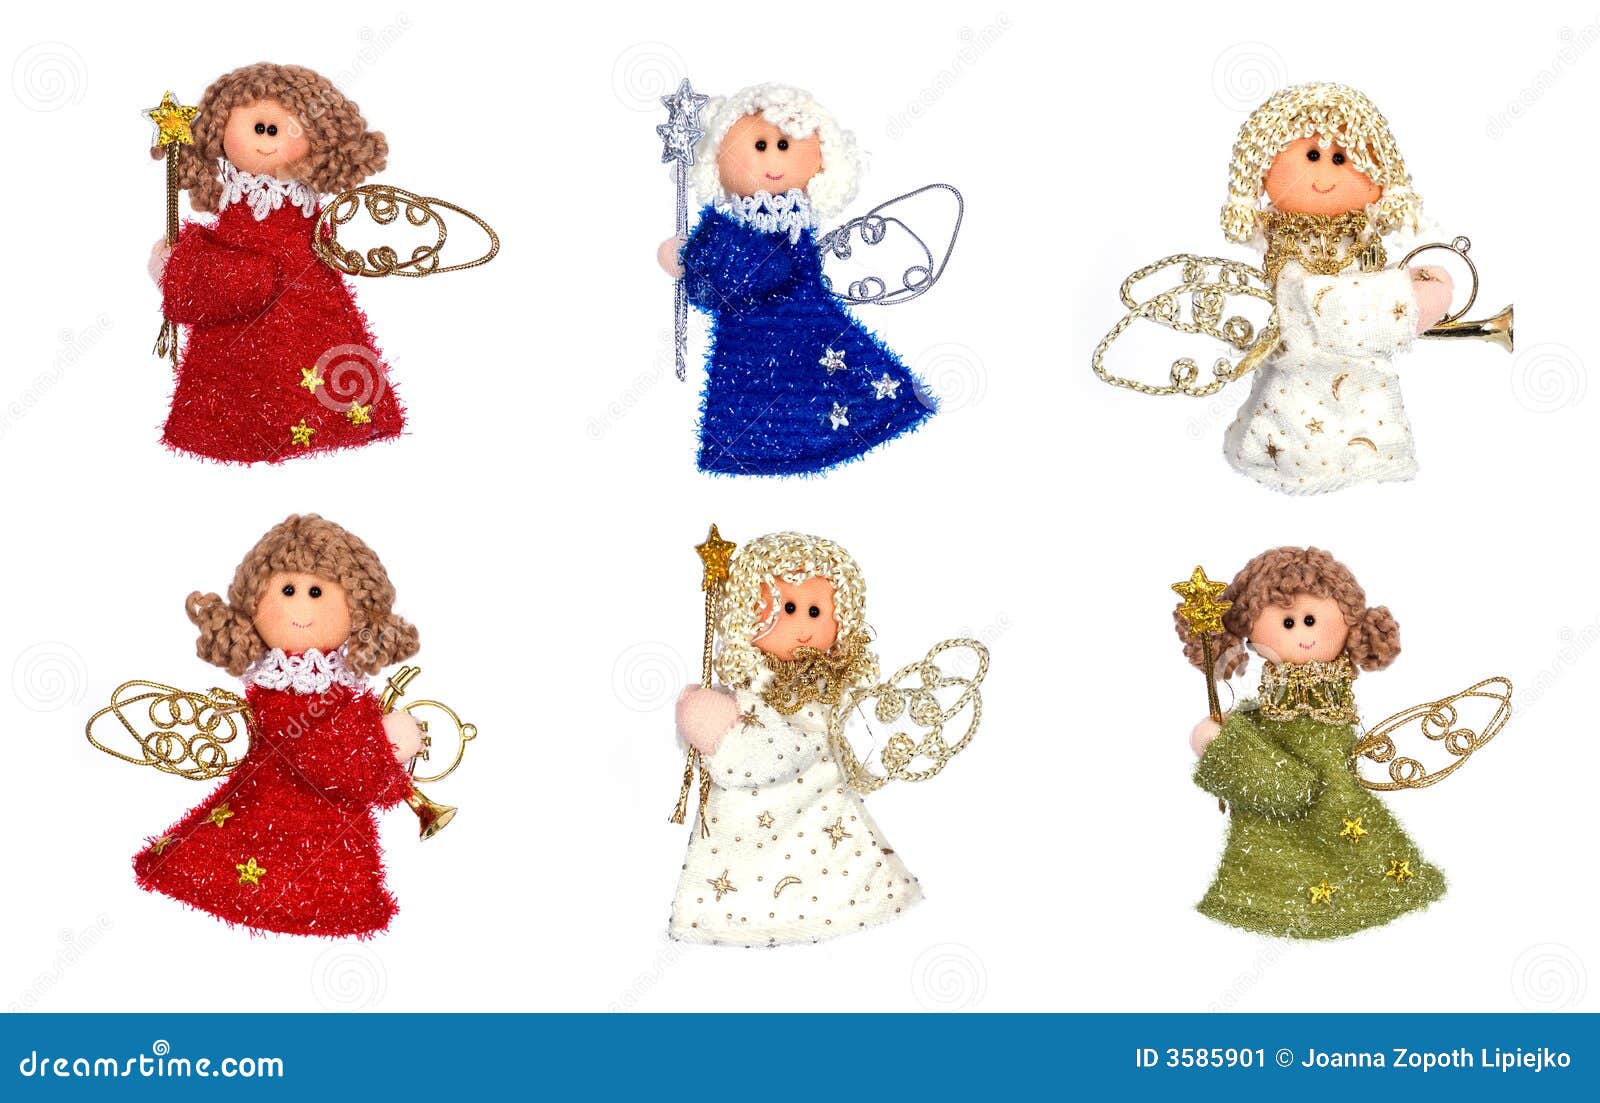 Anjos do Natal ilustração stock. Ilustração de decore - 3585901